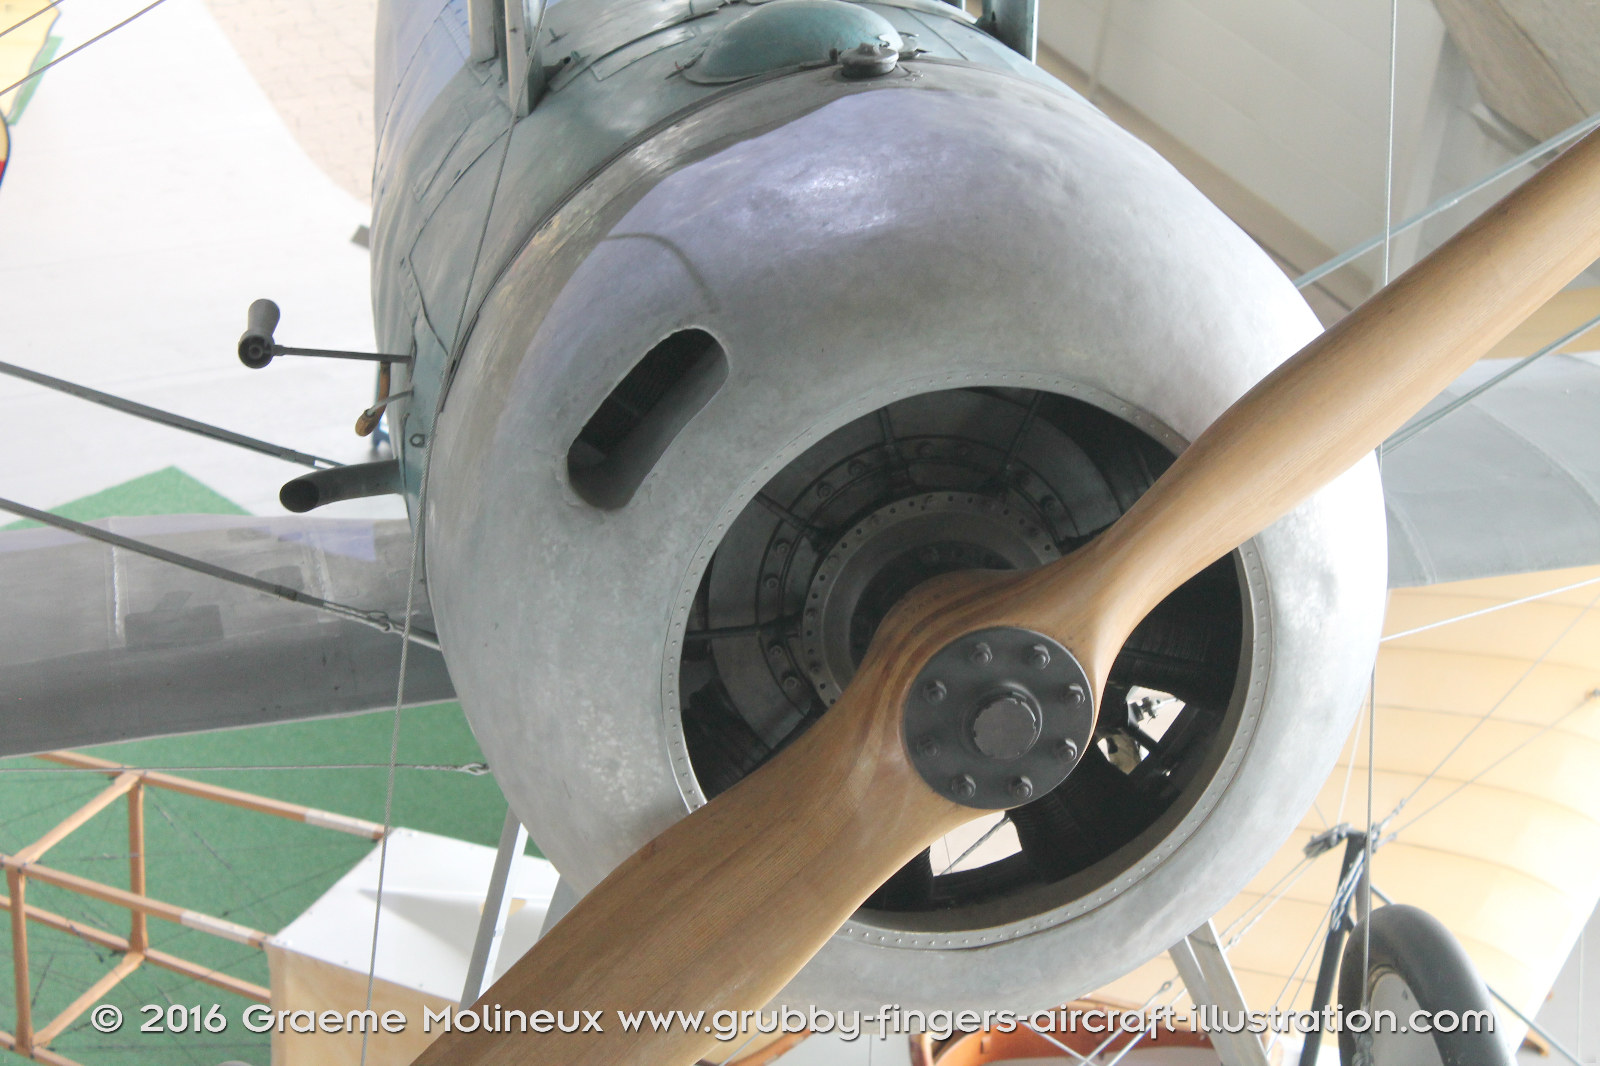 NIEUPORT_N-28_Swiss_Air_Force_Museum_2015_11_GrubbyFingers